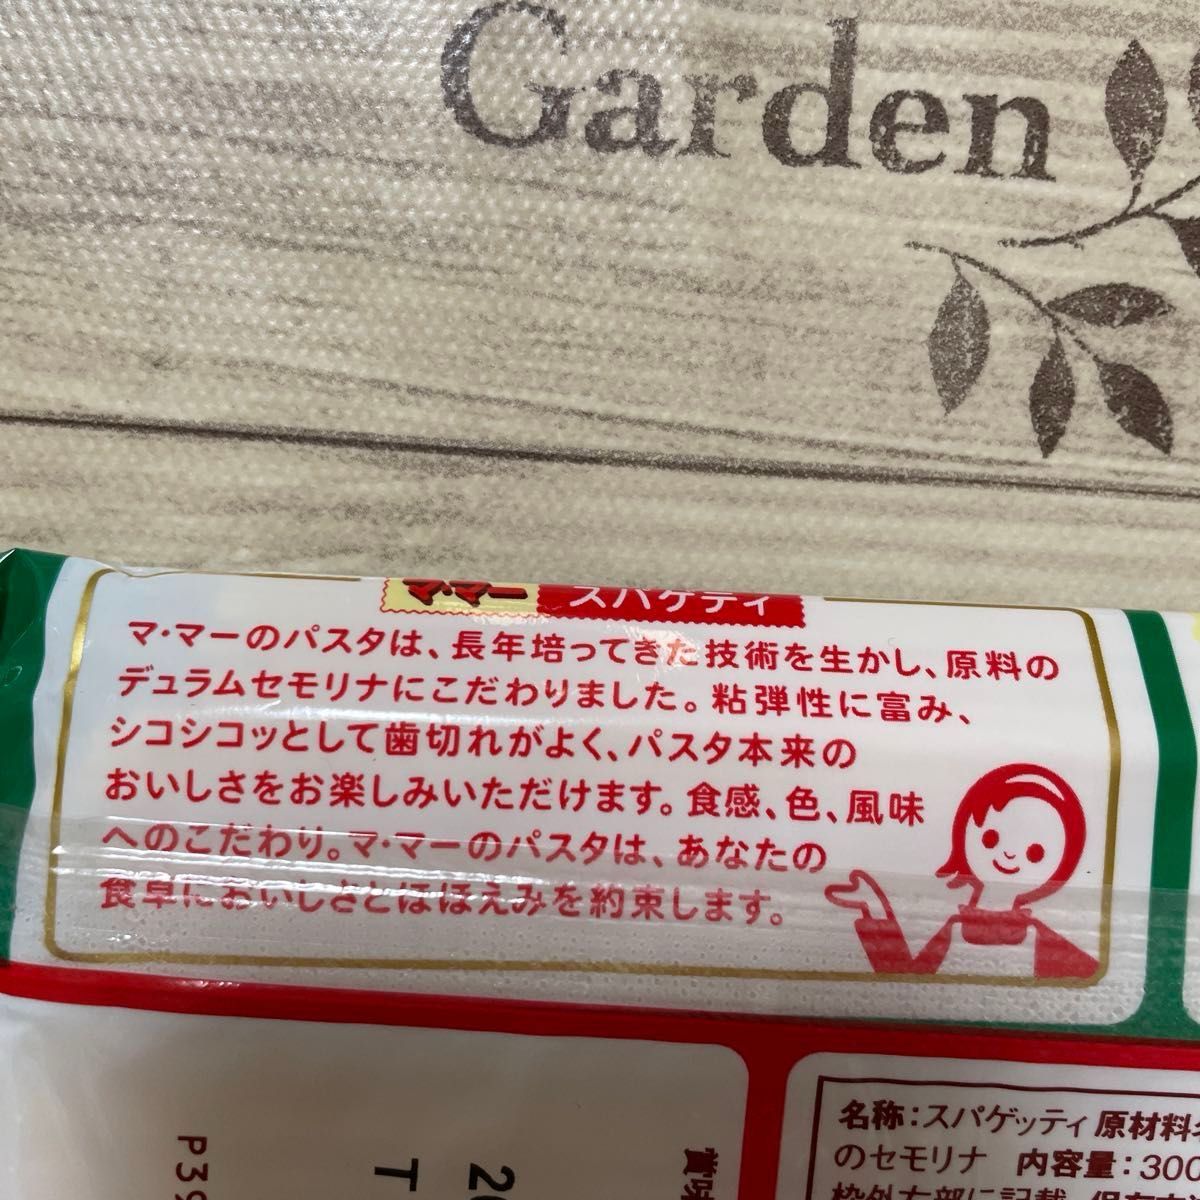 マ・マー スパゲッティ パスタ 日清製粉ウェルナ 300g 5袋セット 数量限定